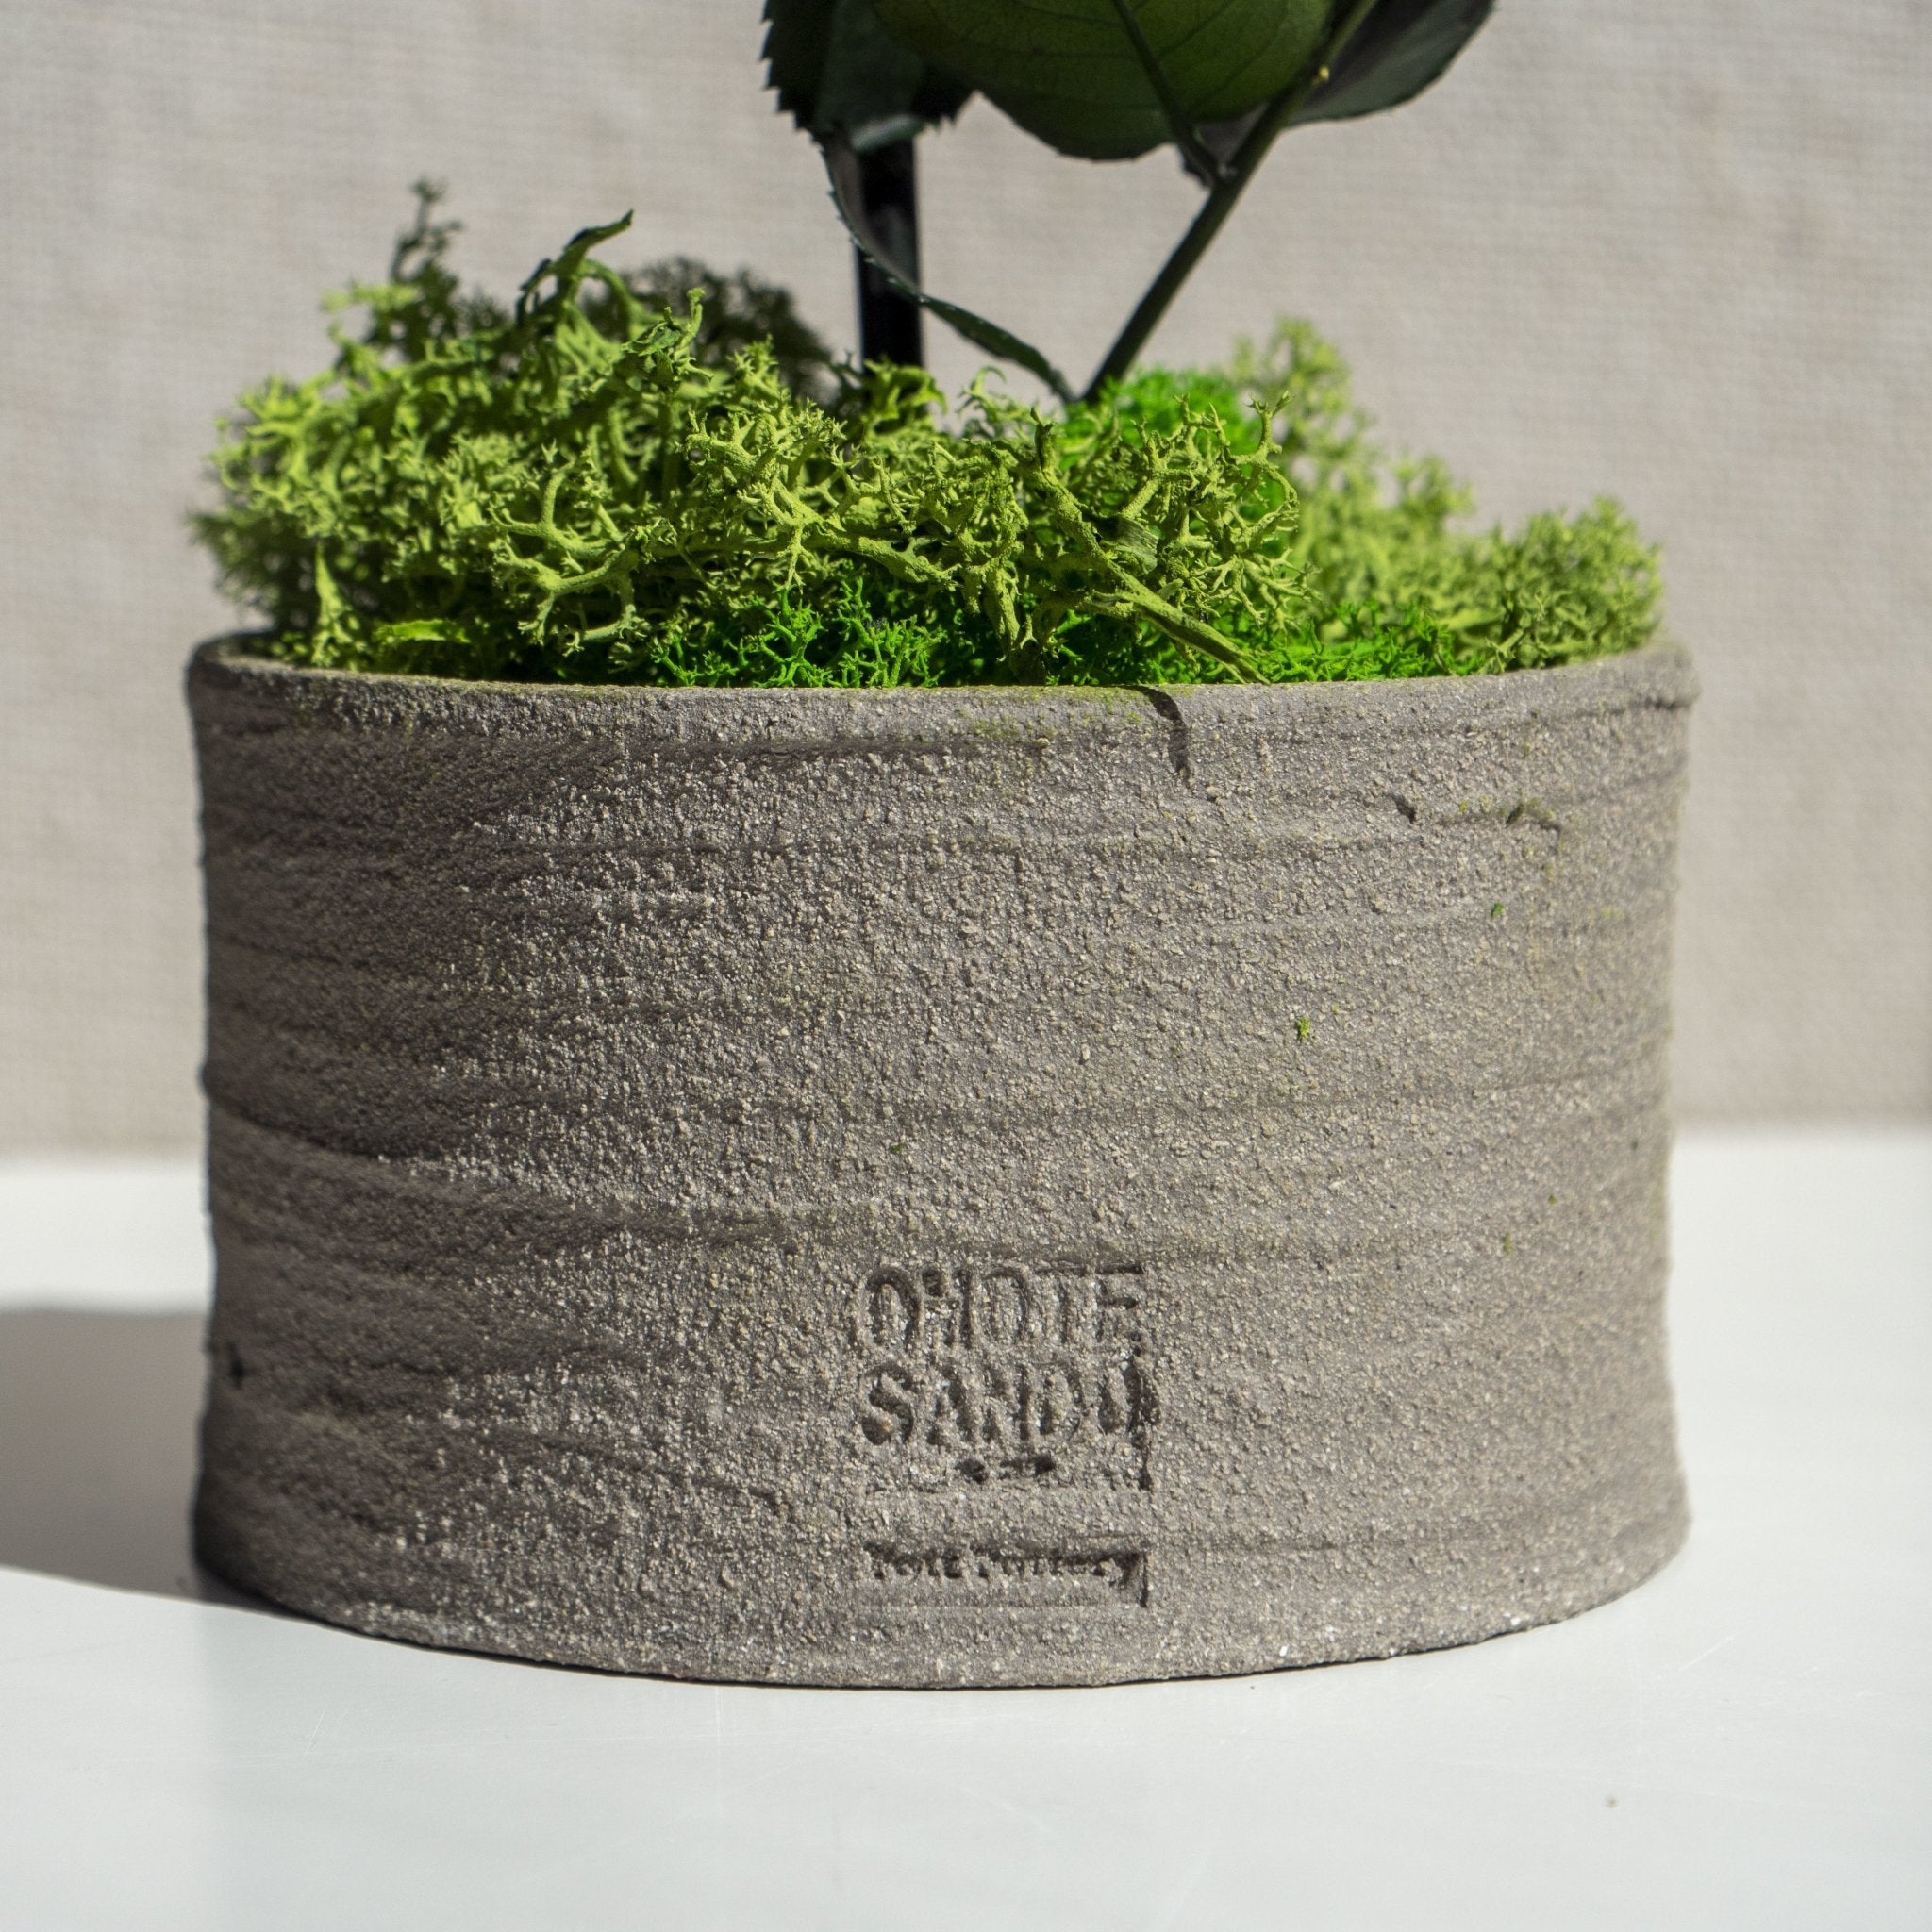 Rose Pott - Omotesando Plants